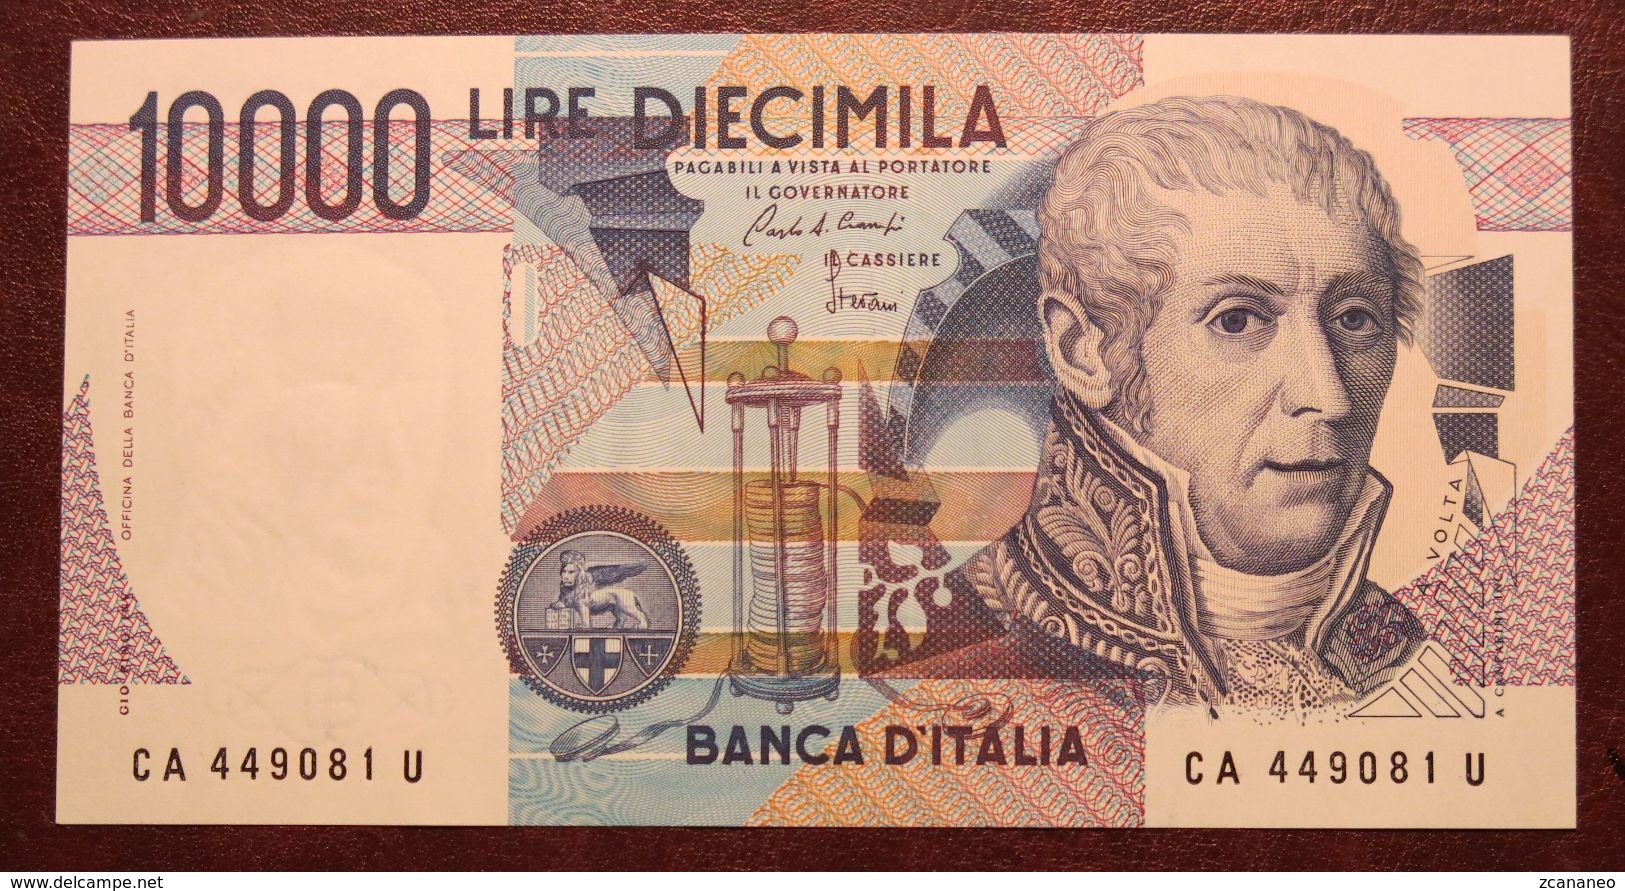 BANCONOTA DA 10.000 LIRE A. VOLTA LETTERA (A) IN FDS REP. ITALIANA - - 1000 Lire